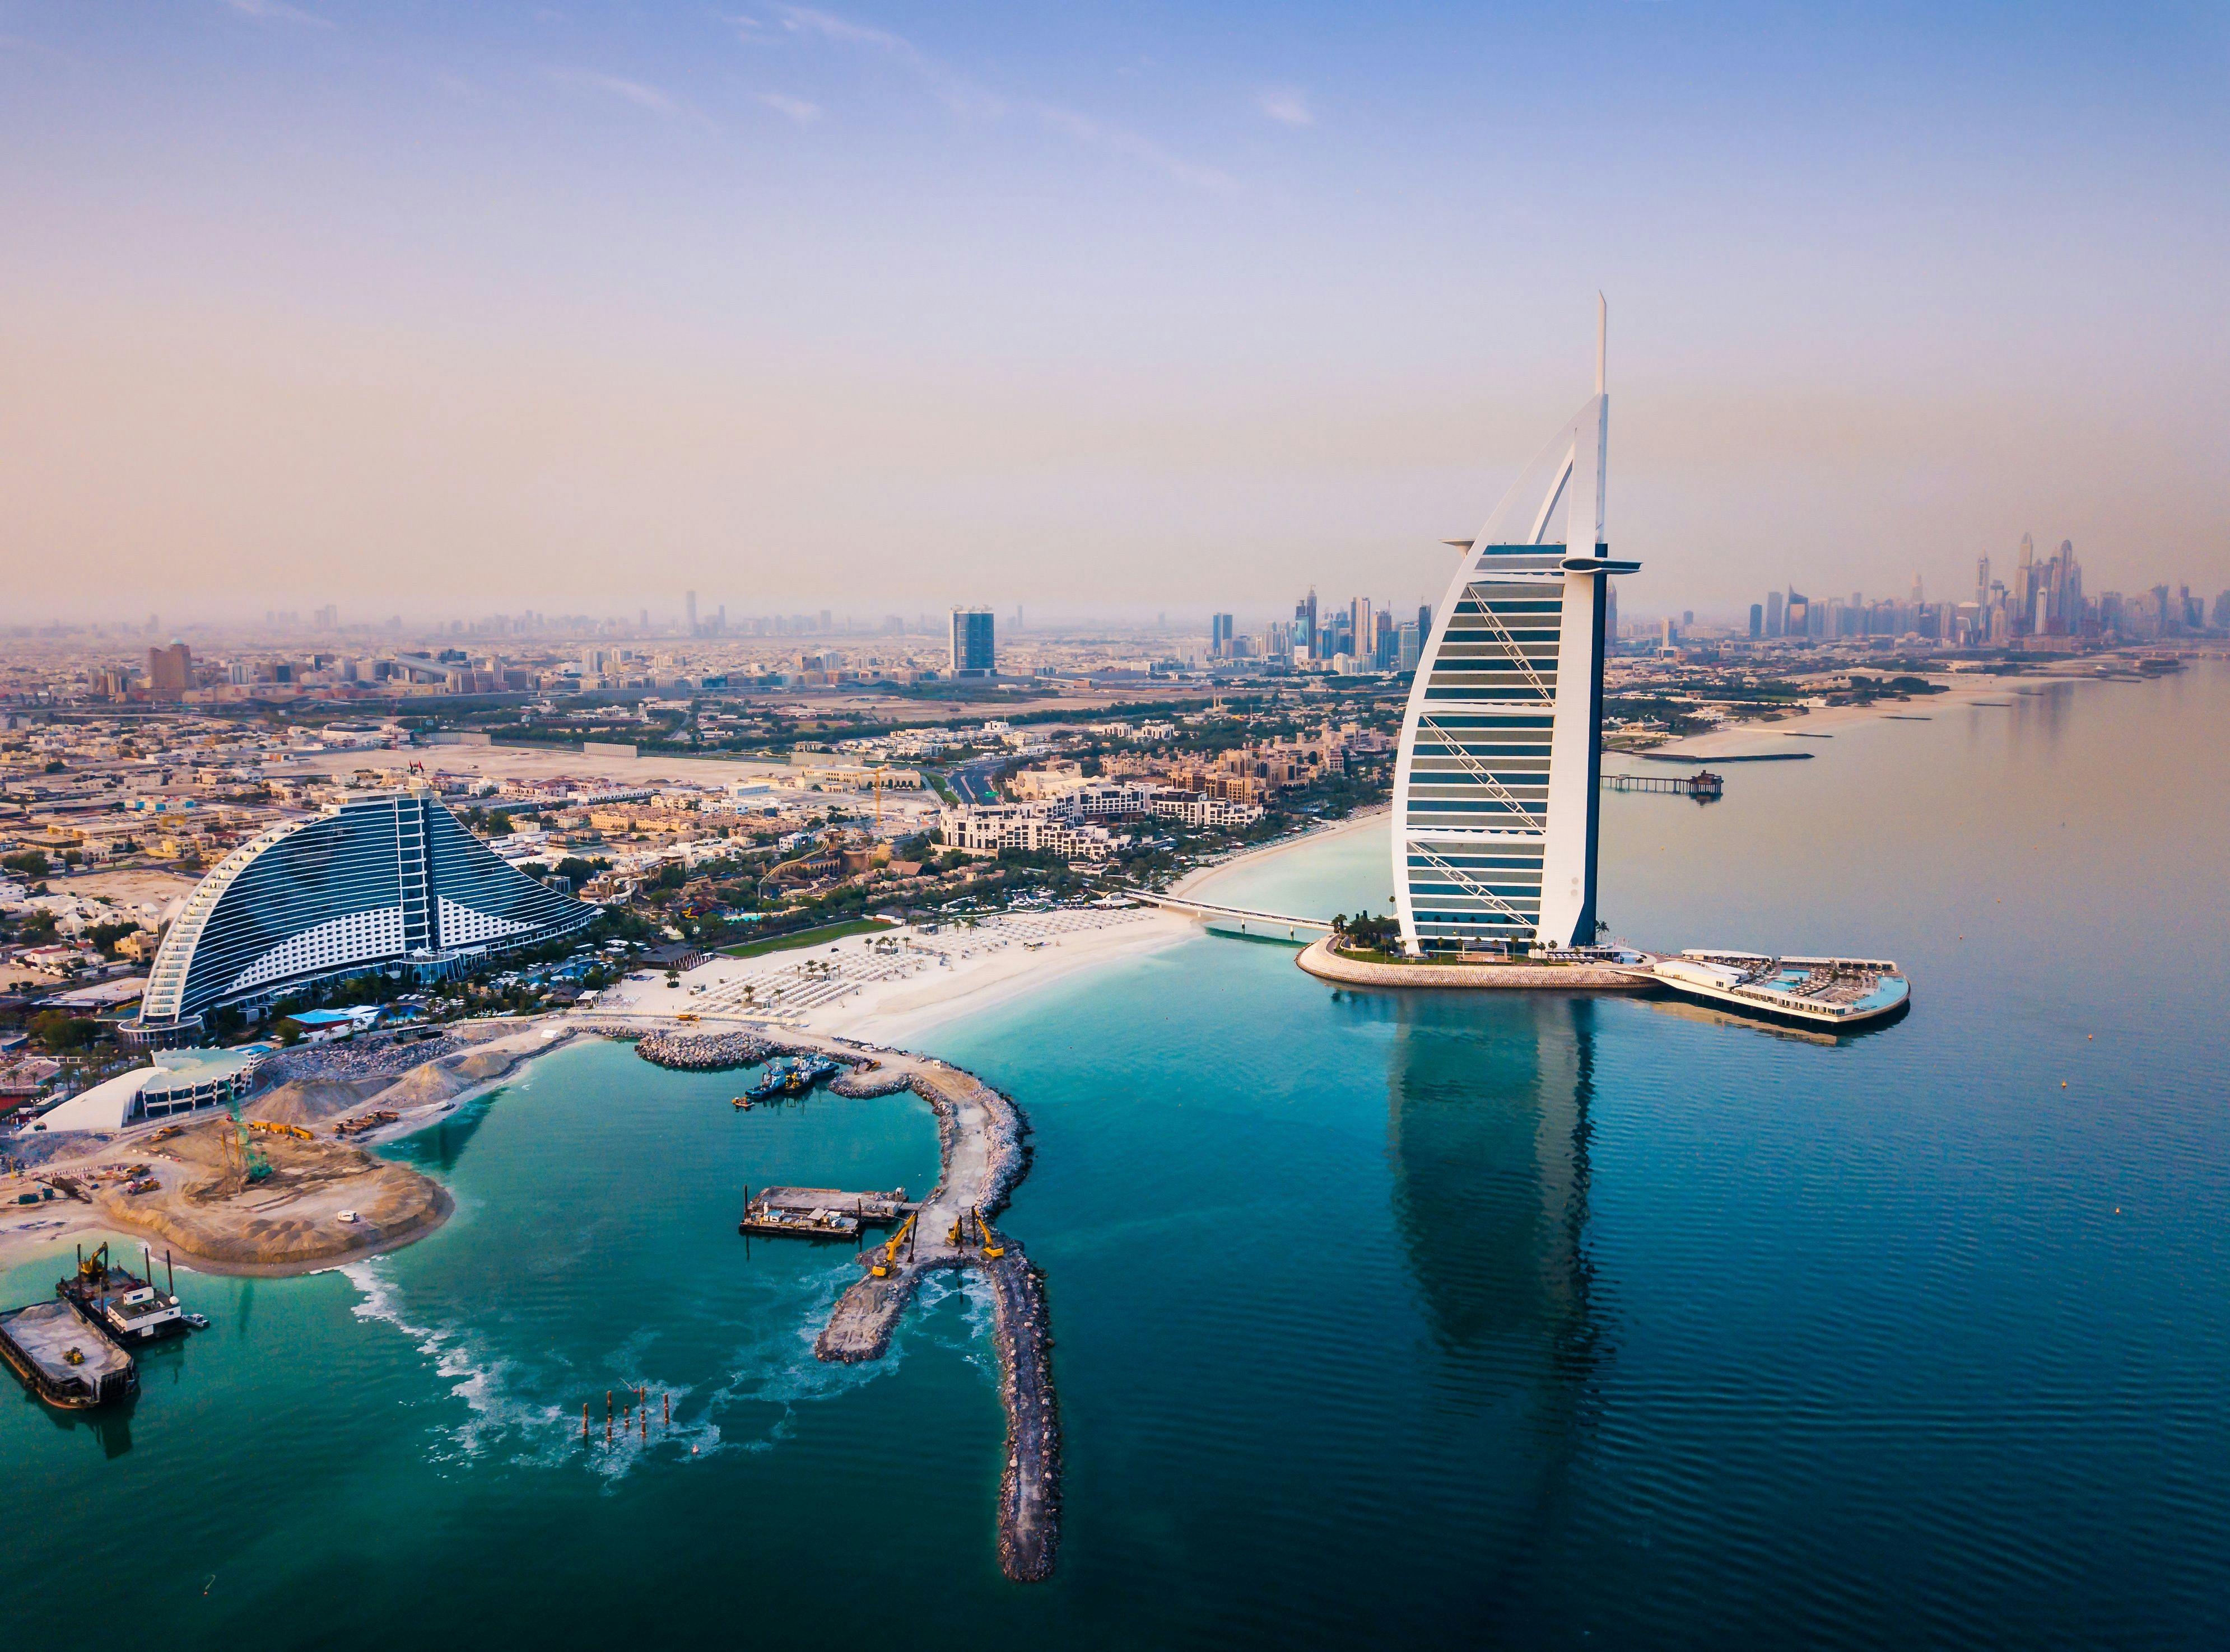 Stadtrundfahrt durch Dubai mit Mittagessen im Burj Al Arab